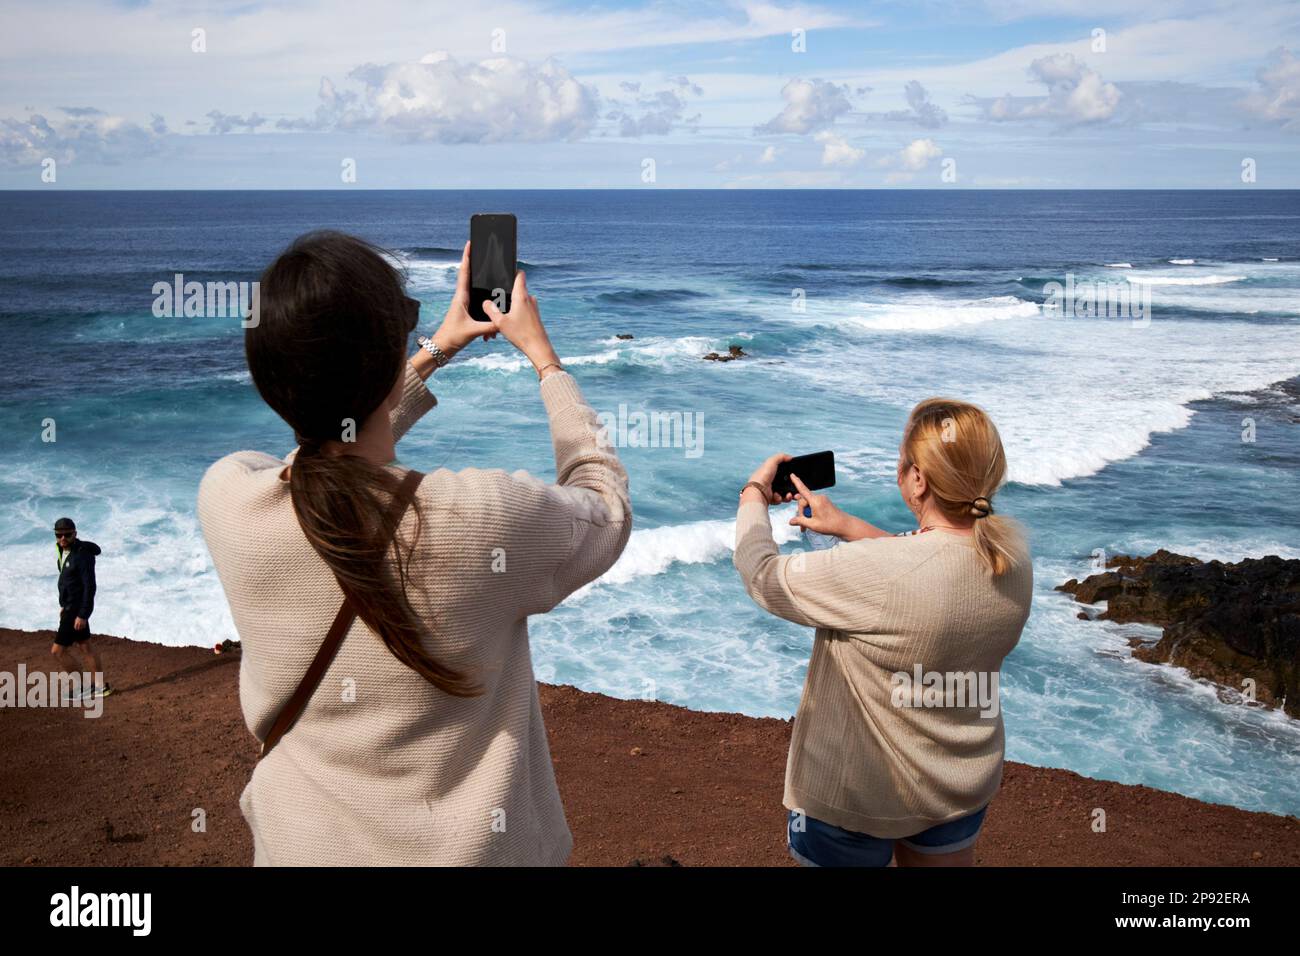 Weibliche Touristen fotografieren mit ihren Telefonen auf dem beliebten Aussichtspfad mirador el golfo Küstenaussichtspfad Lanzarote, Kanarische Inseln, Spanien Stockfoto